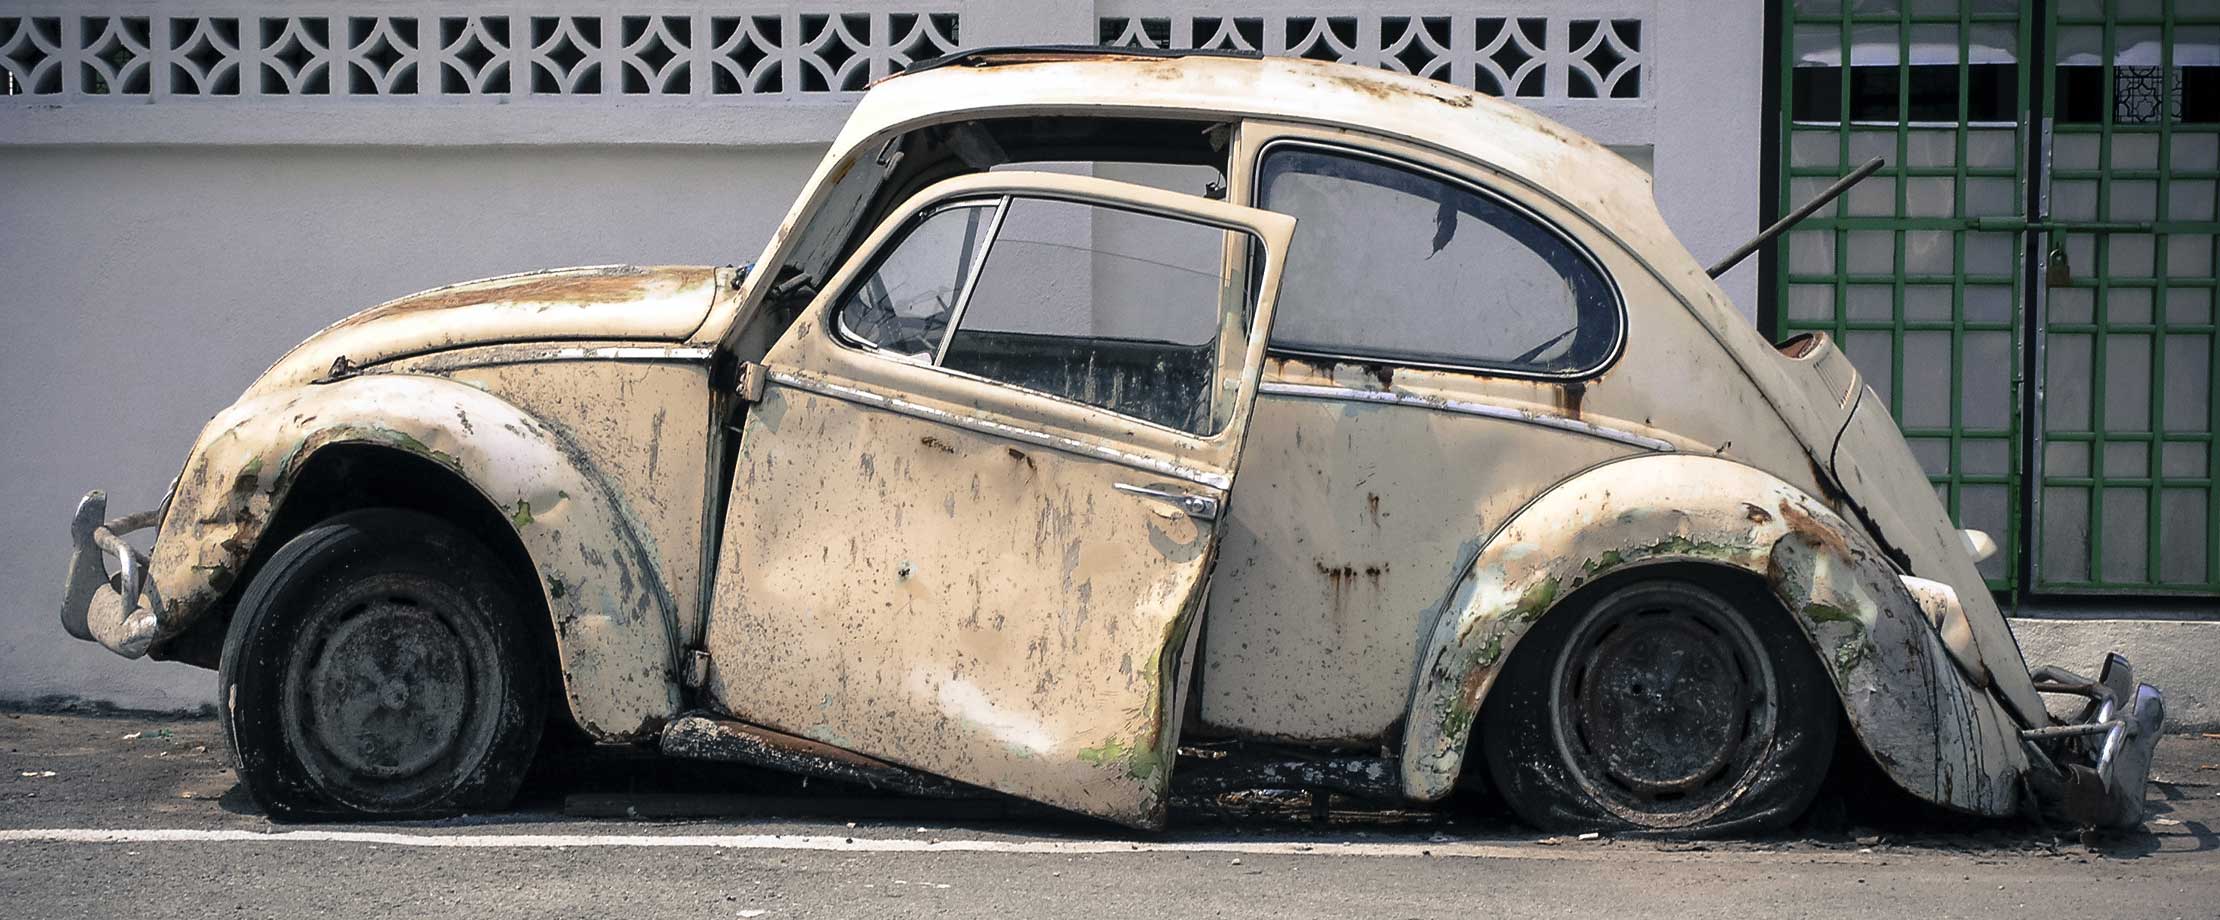 Ein alter VW Käfer steht komplett zerstört vor einem weißen Gebäude. Die Tür hängt nur noch an wenigen Schrauben, das Heck liegt auf dem Boden auf.